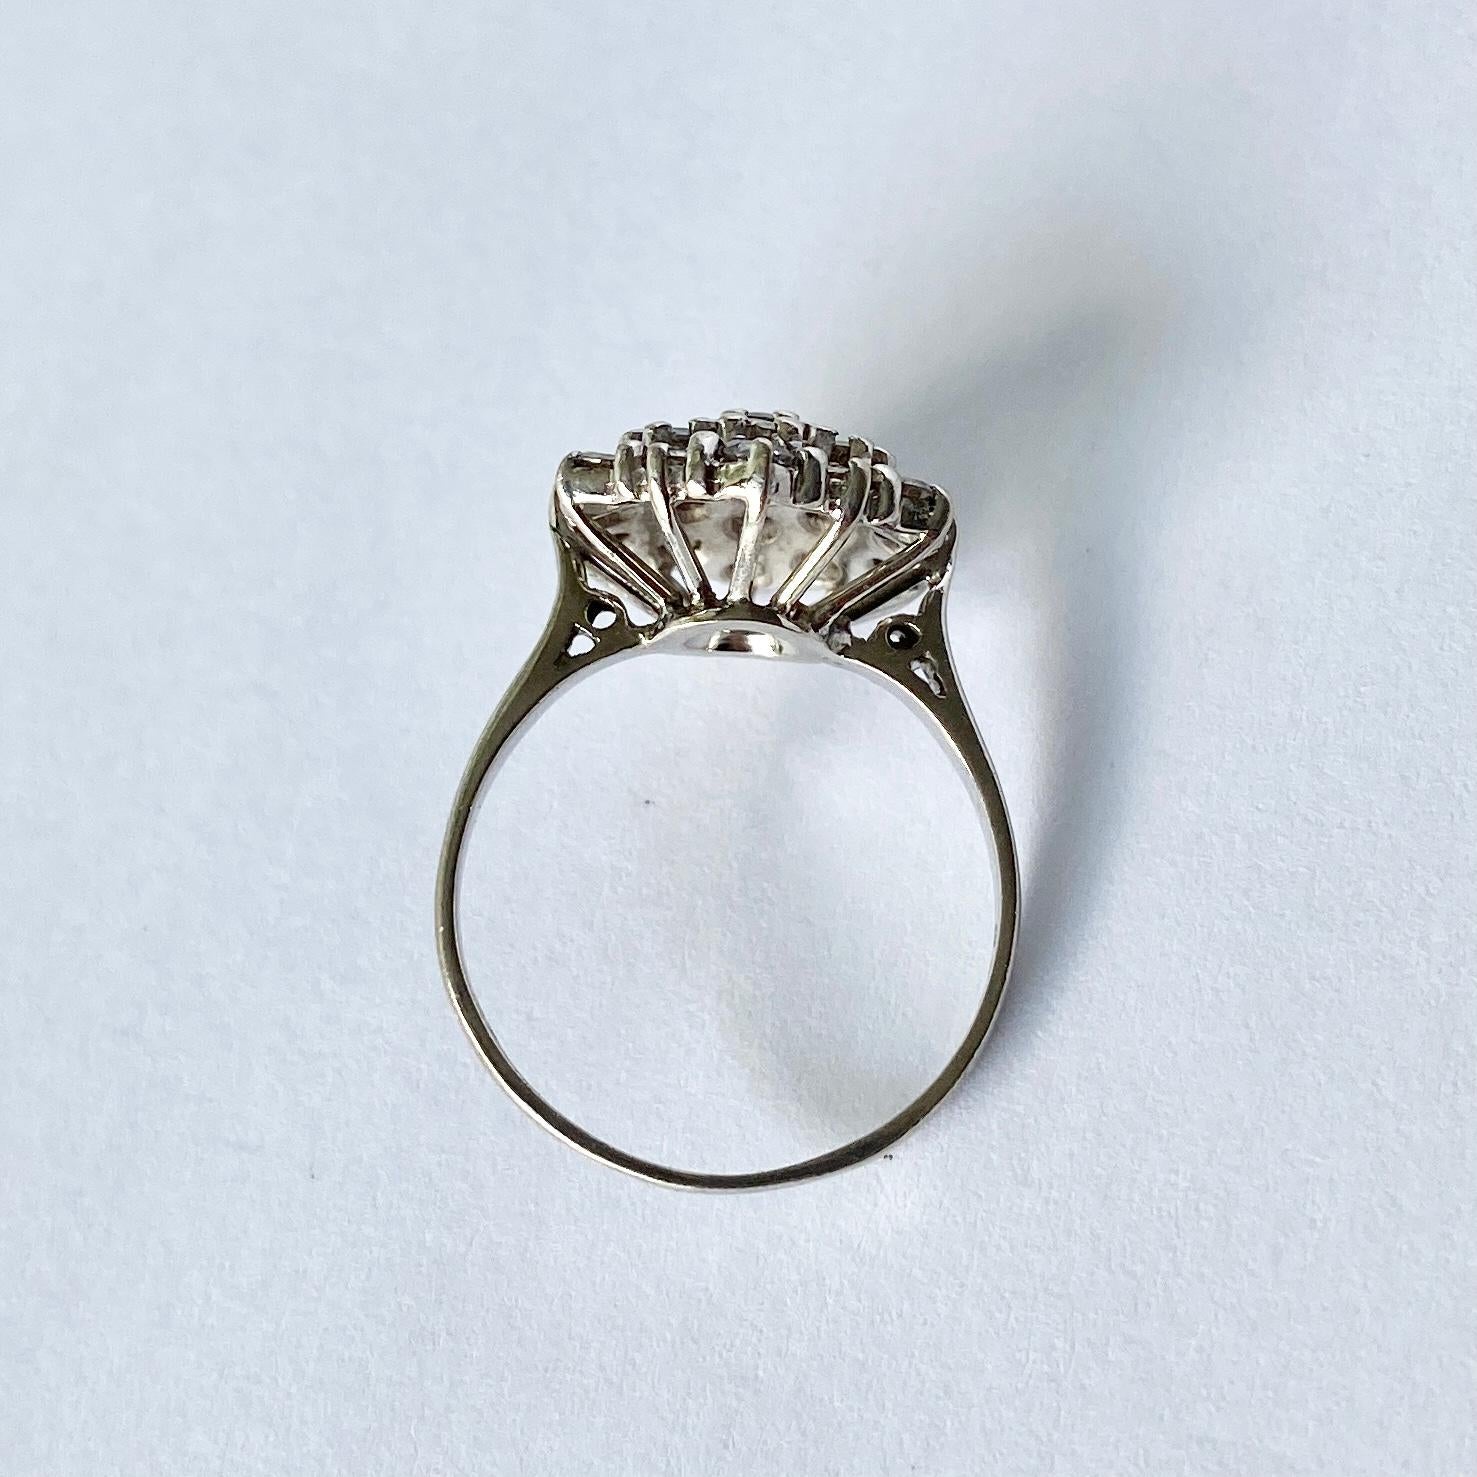 Dieser Cluster-Ring enthält Diamanten von insgesamt ca. 1,5 ct. und ist hell und funkelnd. Die Steine sind hoch oben auf einer durchbrochenen Galerie aus 18 Karat Weißgold angebracht. Vollständig gestempelt London 1977. 

Ringgröße: N oe 6 3/4